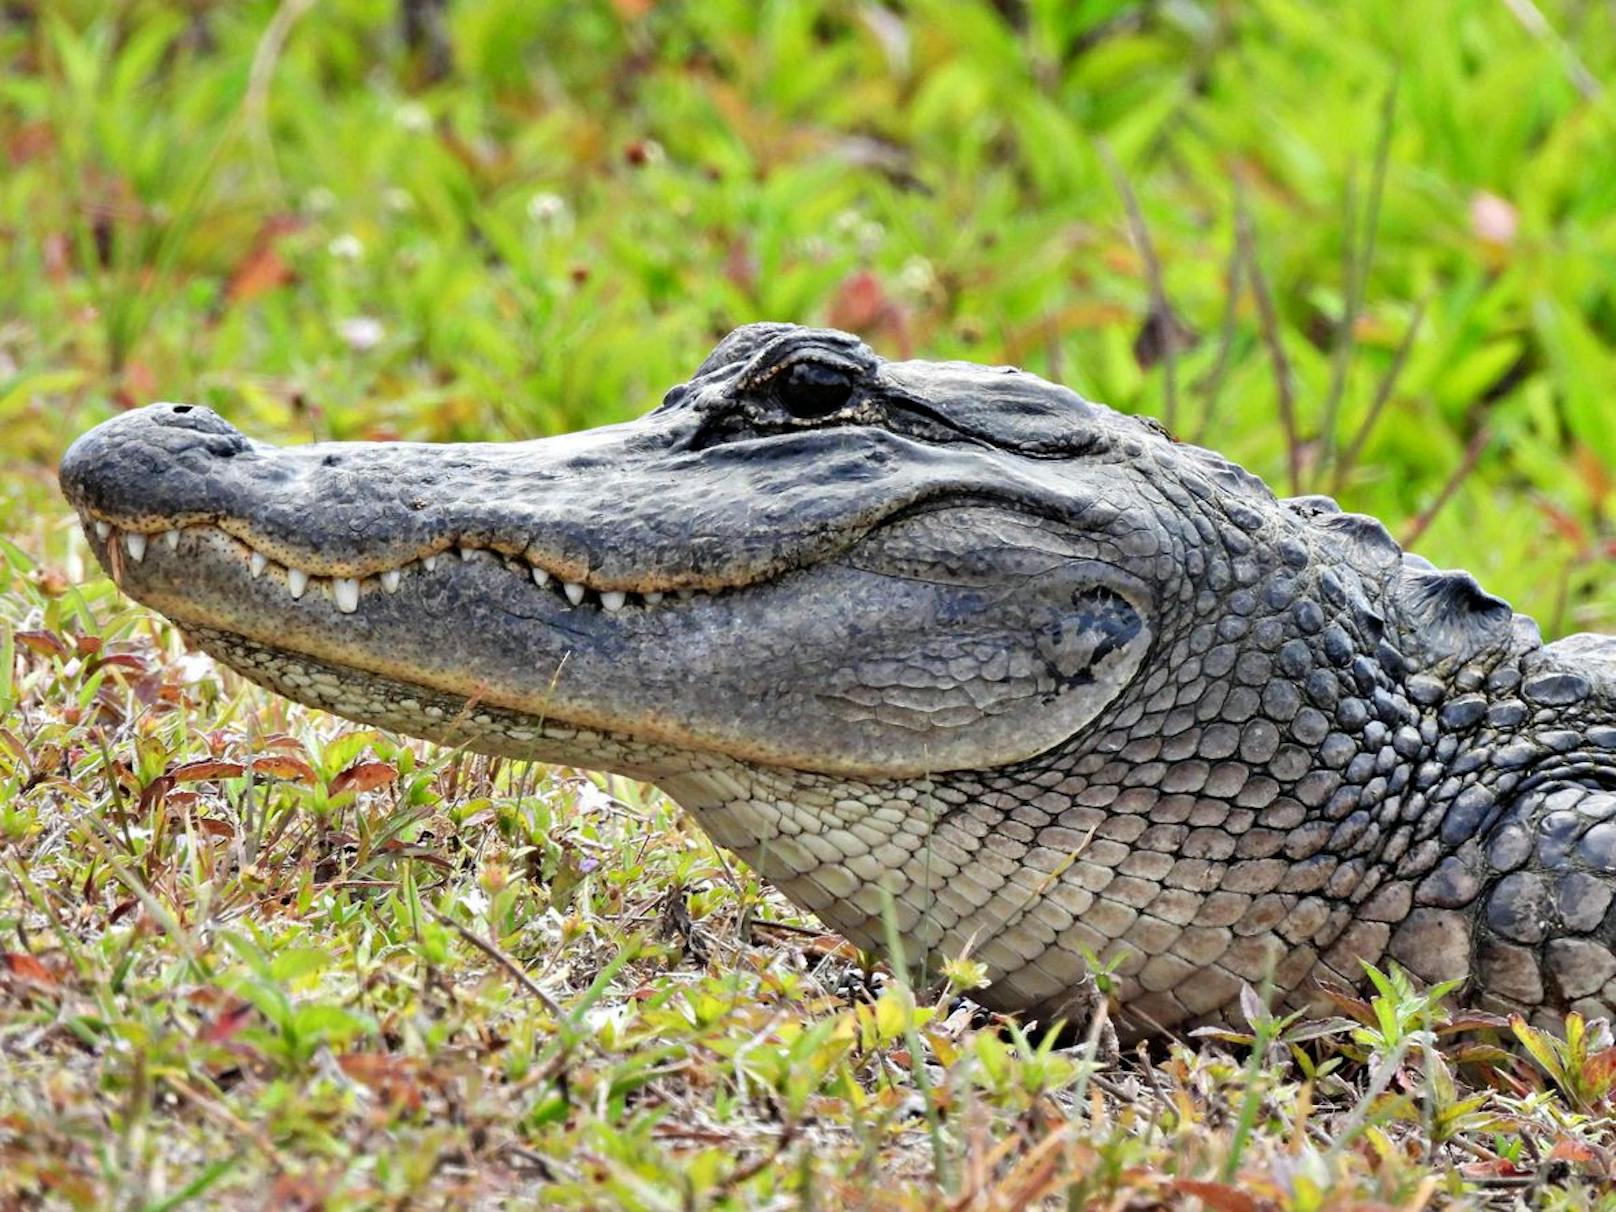 Beim <strong>Alligator</strong> ist das <strong>Oberkiefer breiter als das Unterkiefer,</strong> weshalb man nur die obere Zahnreihe sieht.